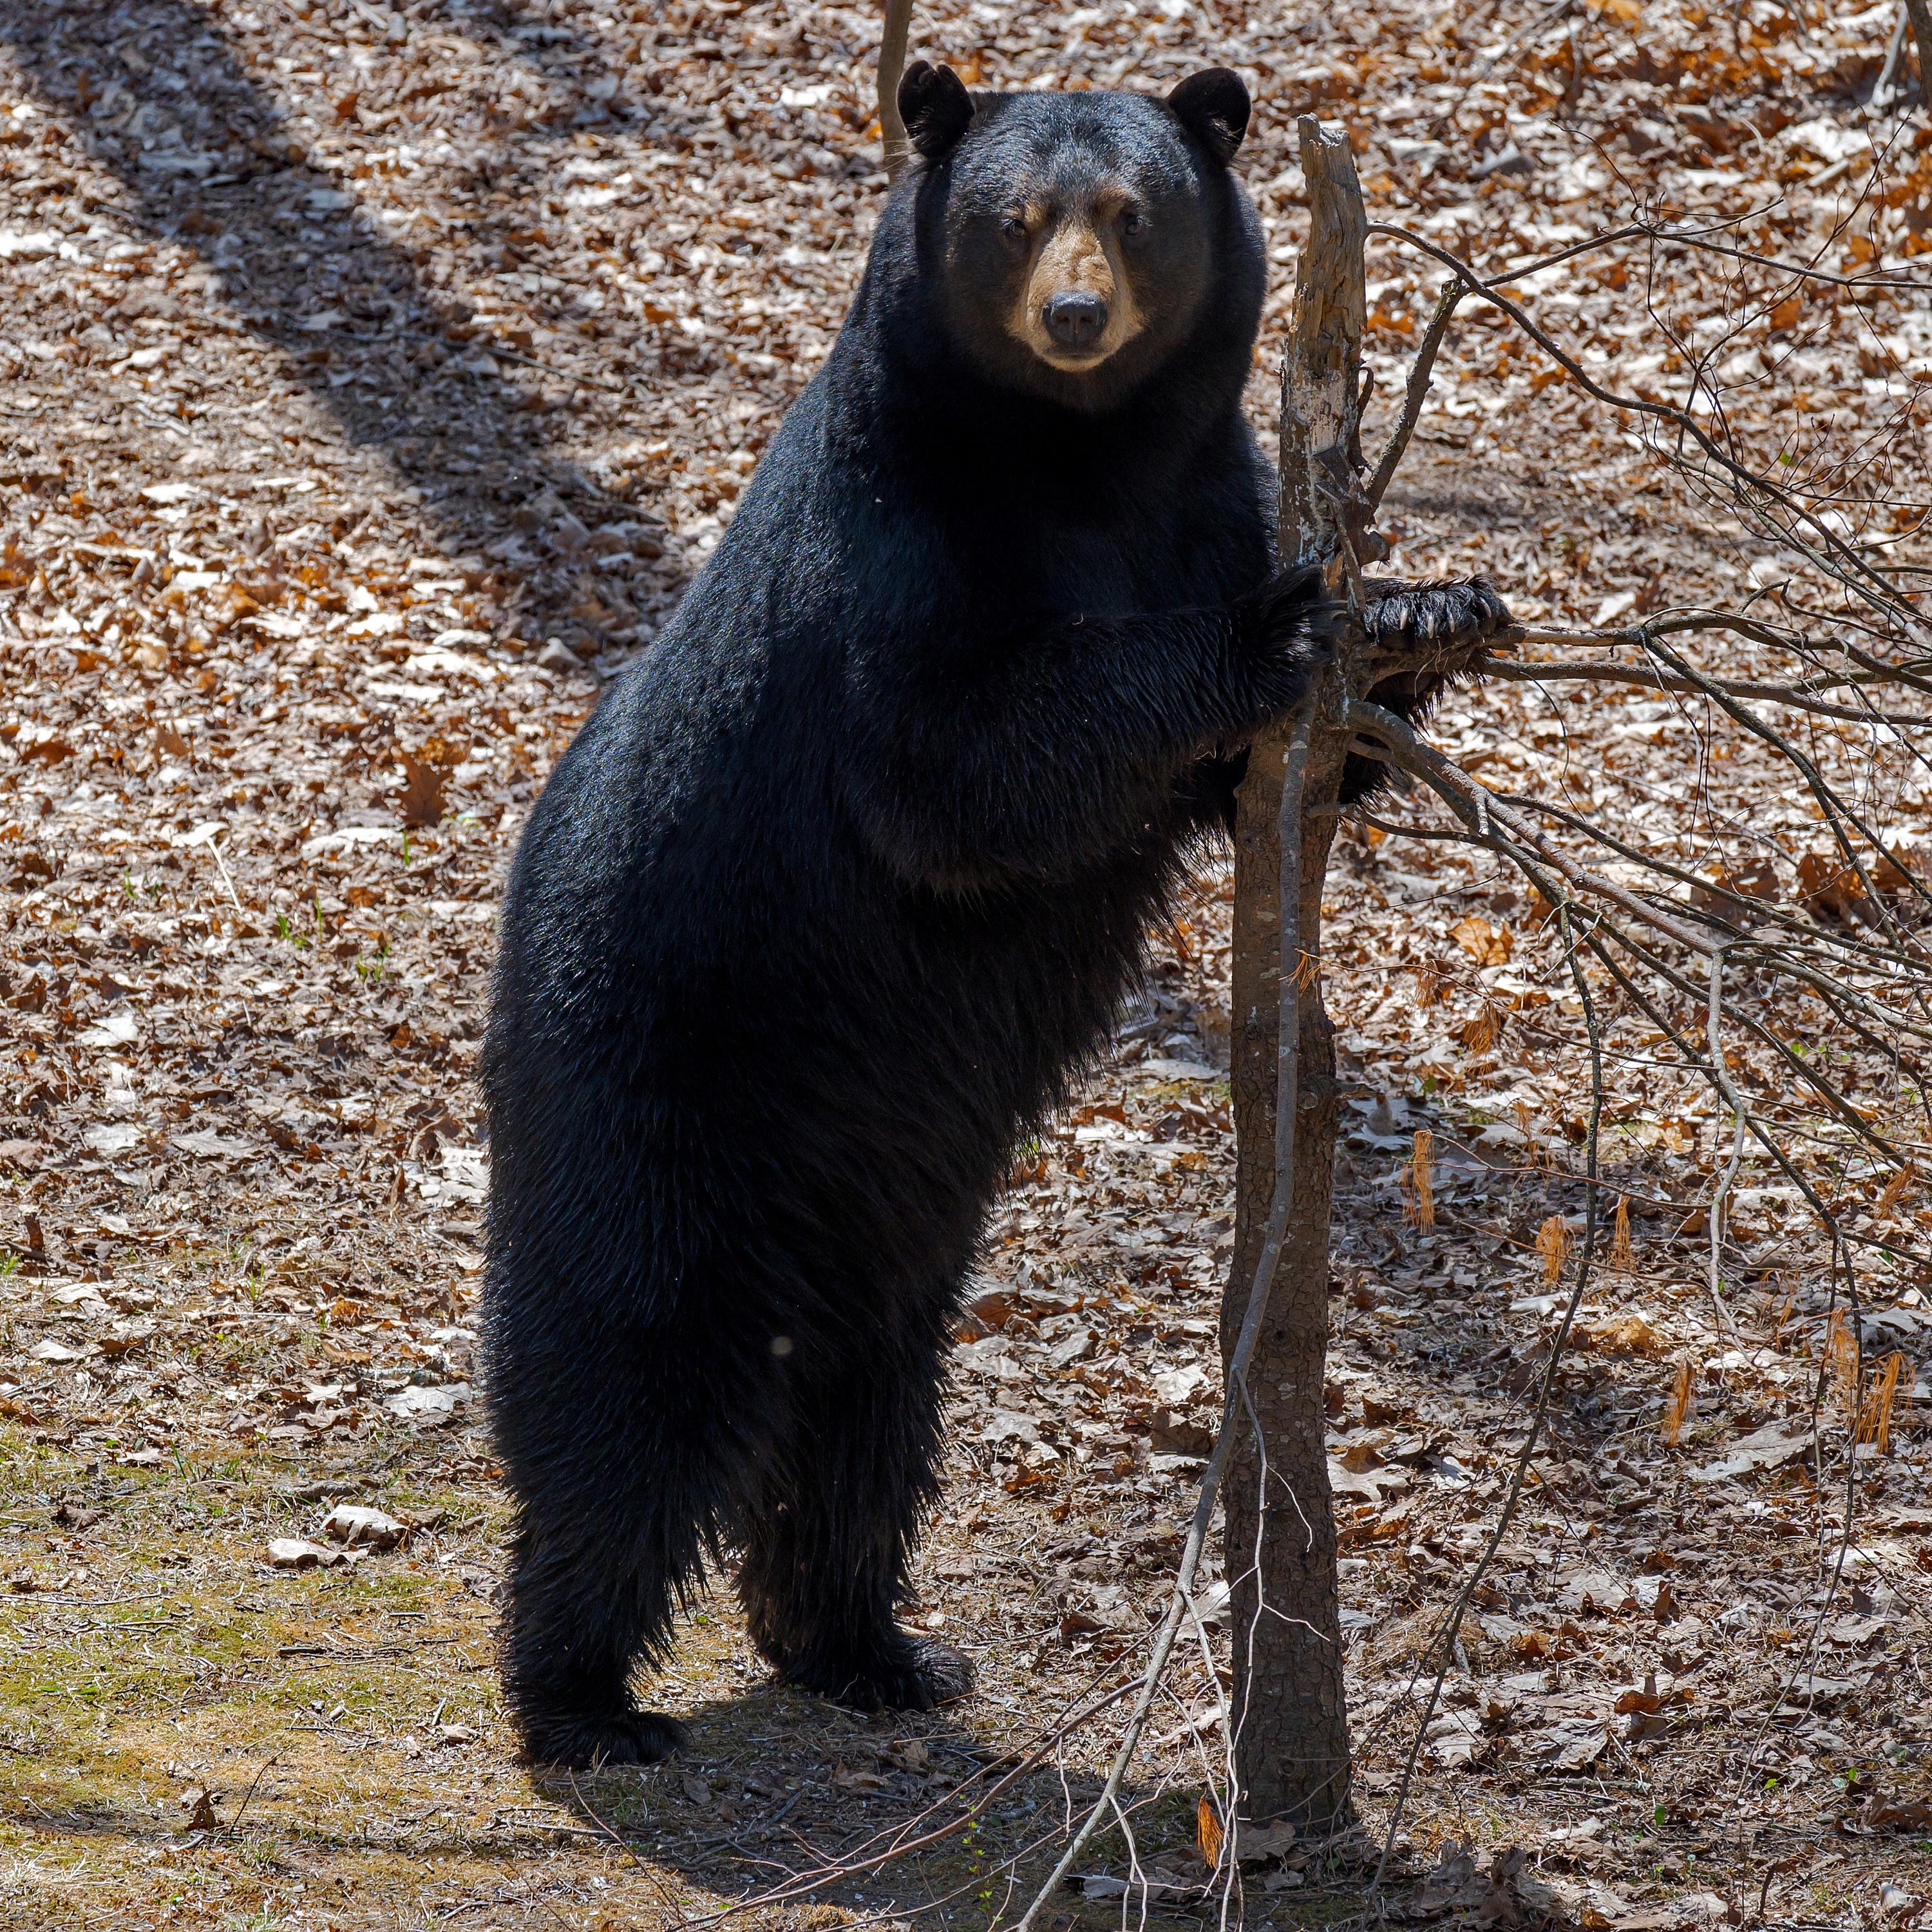 Black bear at marking tree at edge of a Washington, Connecticut